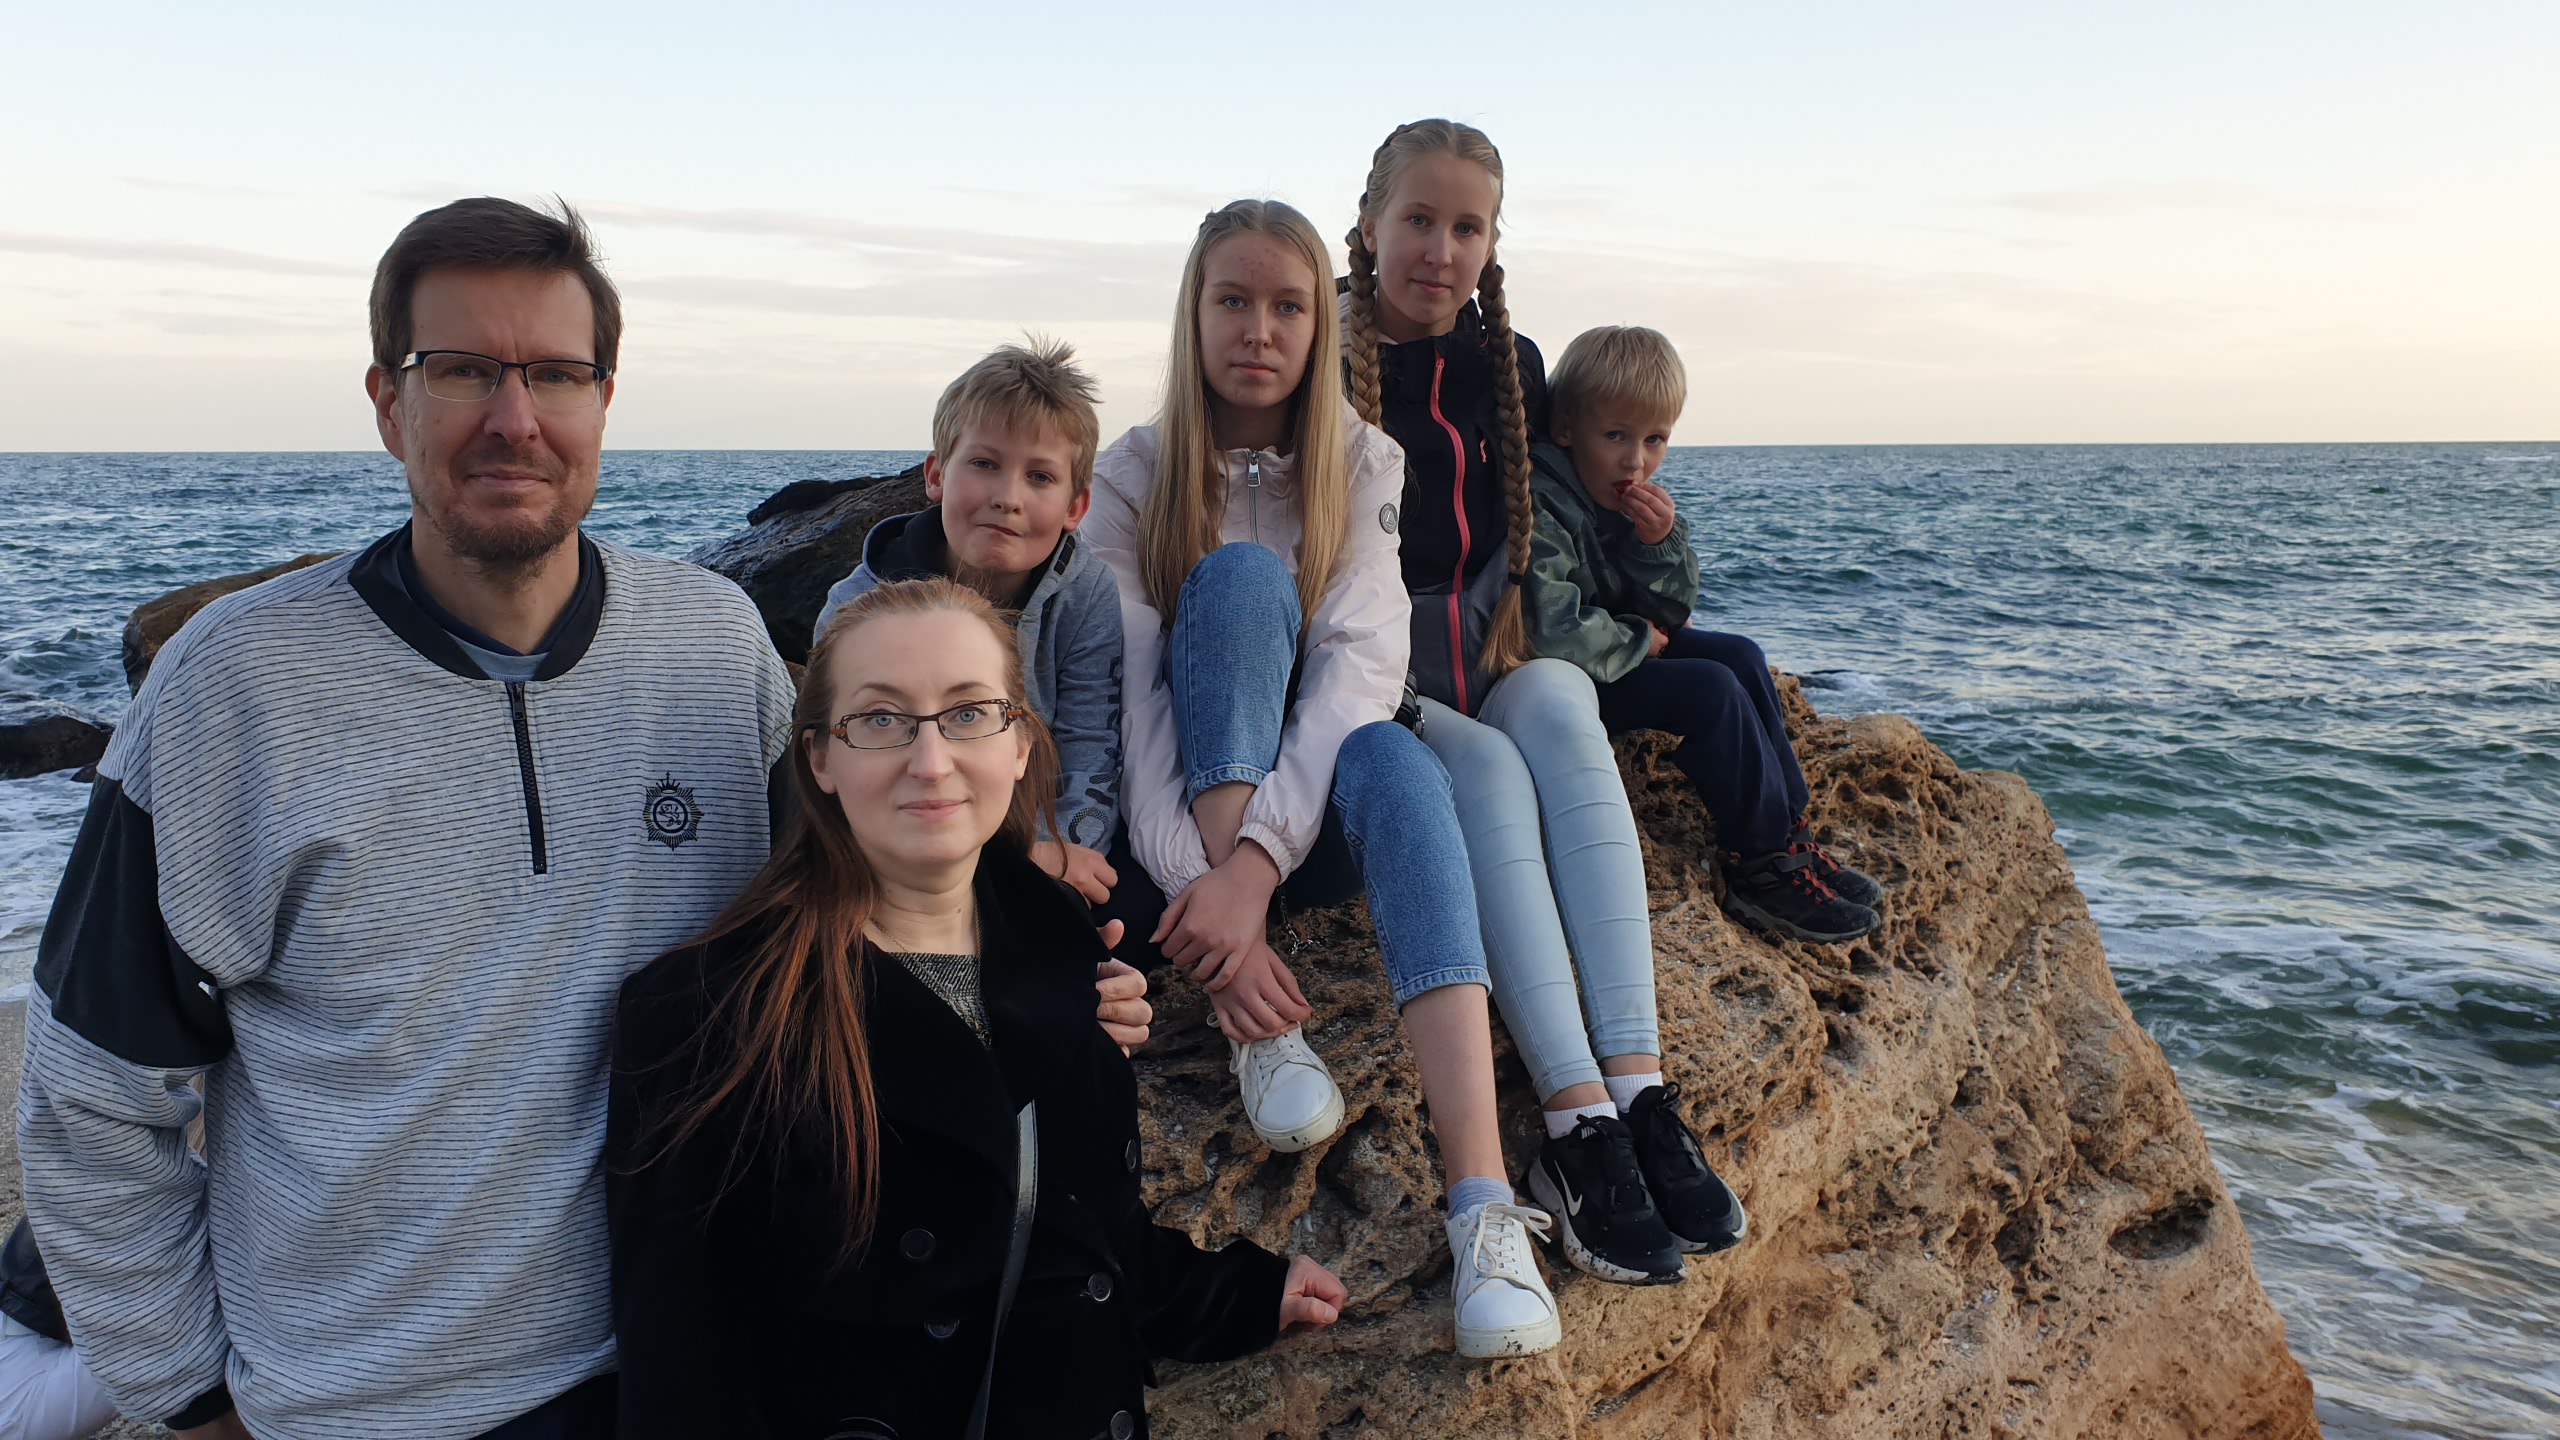 Liedenpohjan perhe on istumassa Mustameren rannalla.